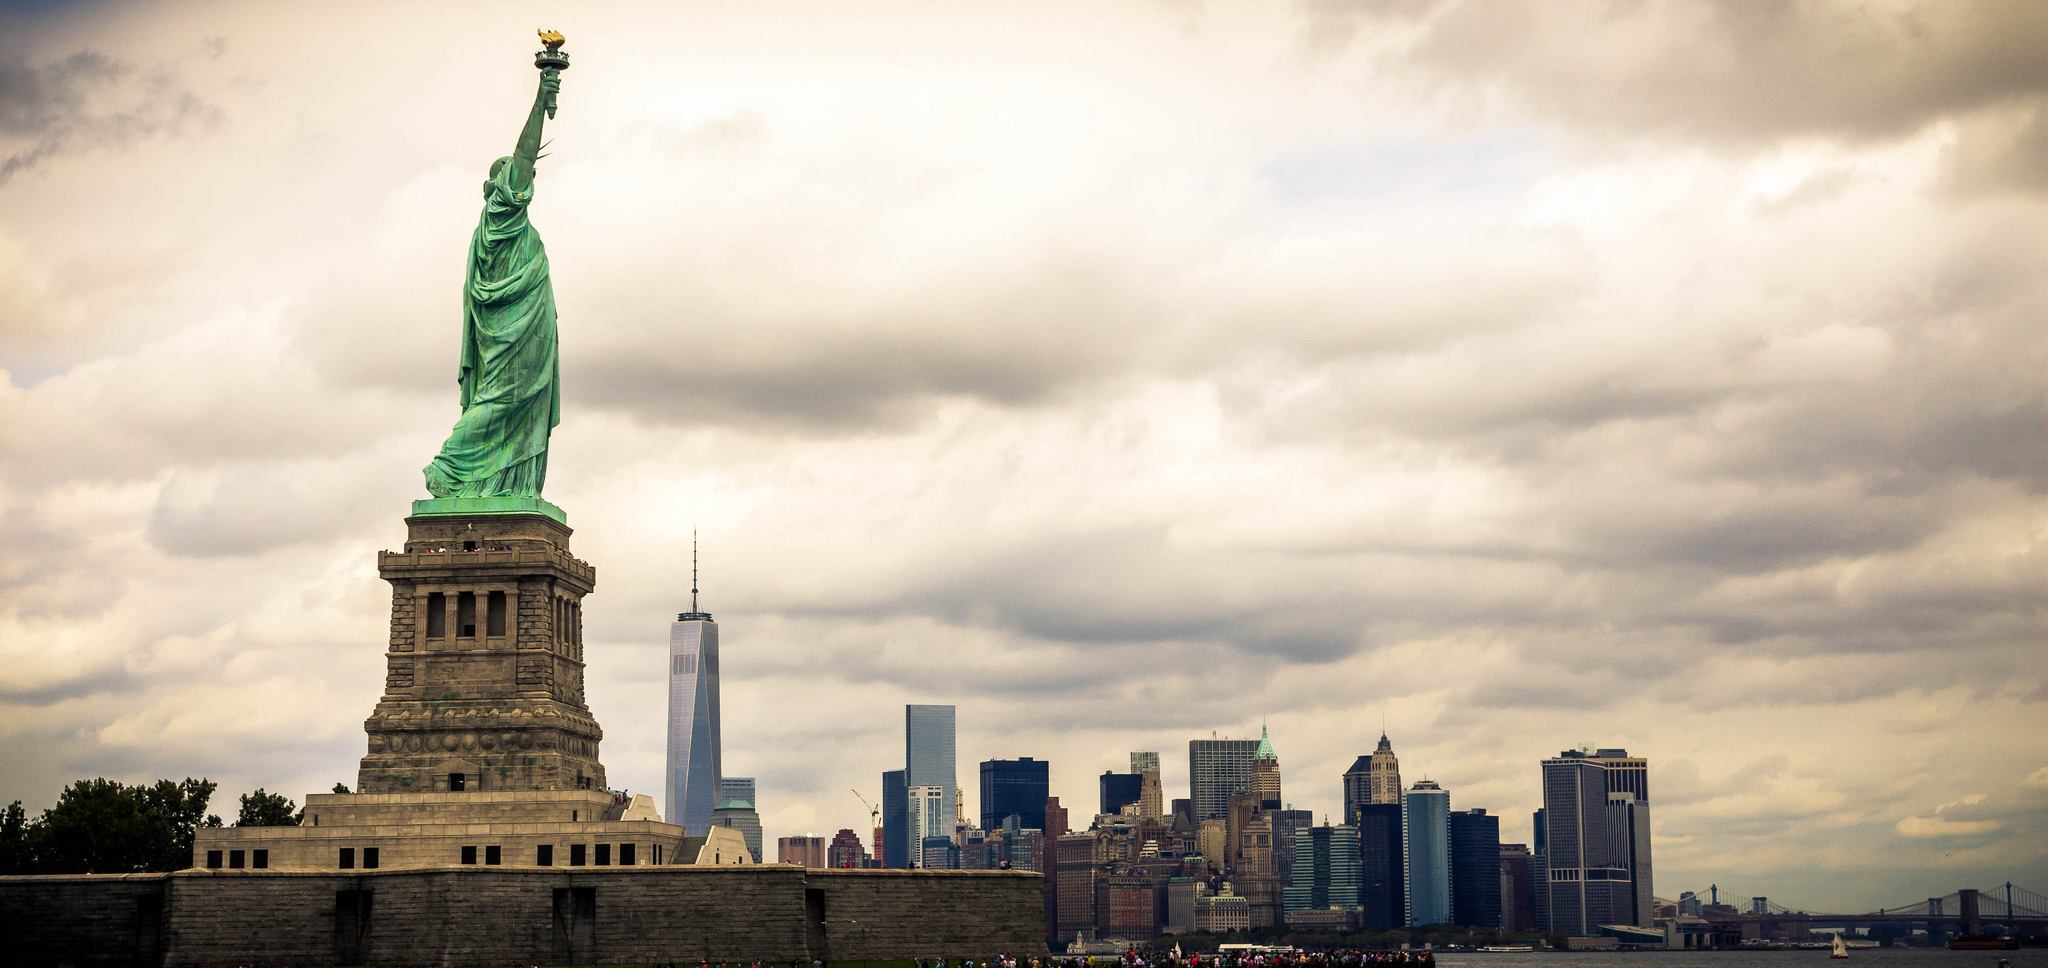 Statue of Liberty. Foto original de David Liu, publicada en Flickr con licencia Creative Commons.